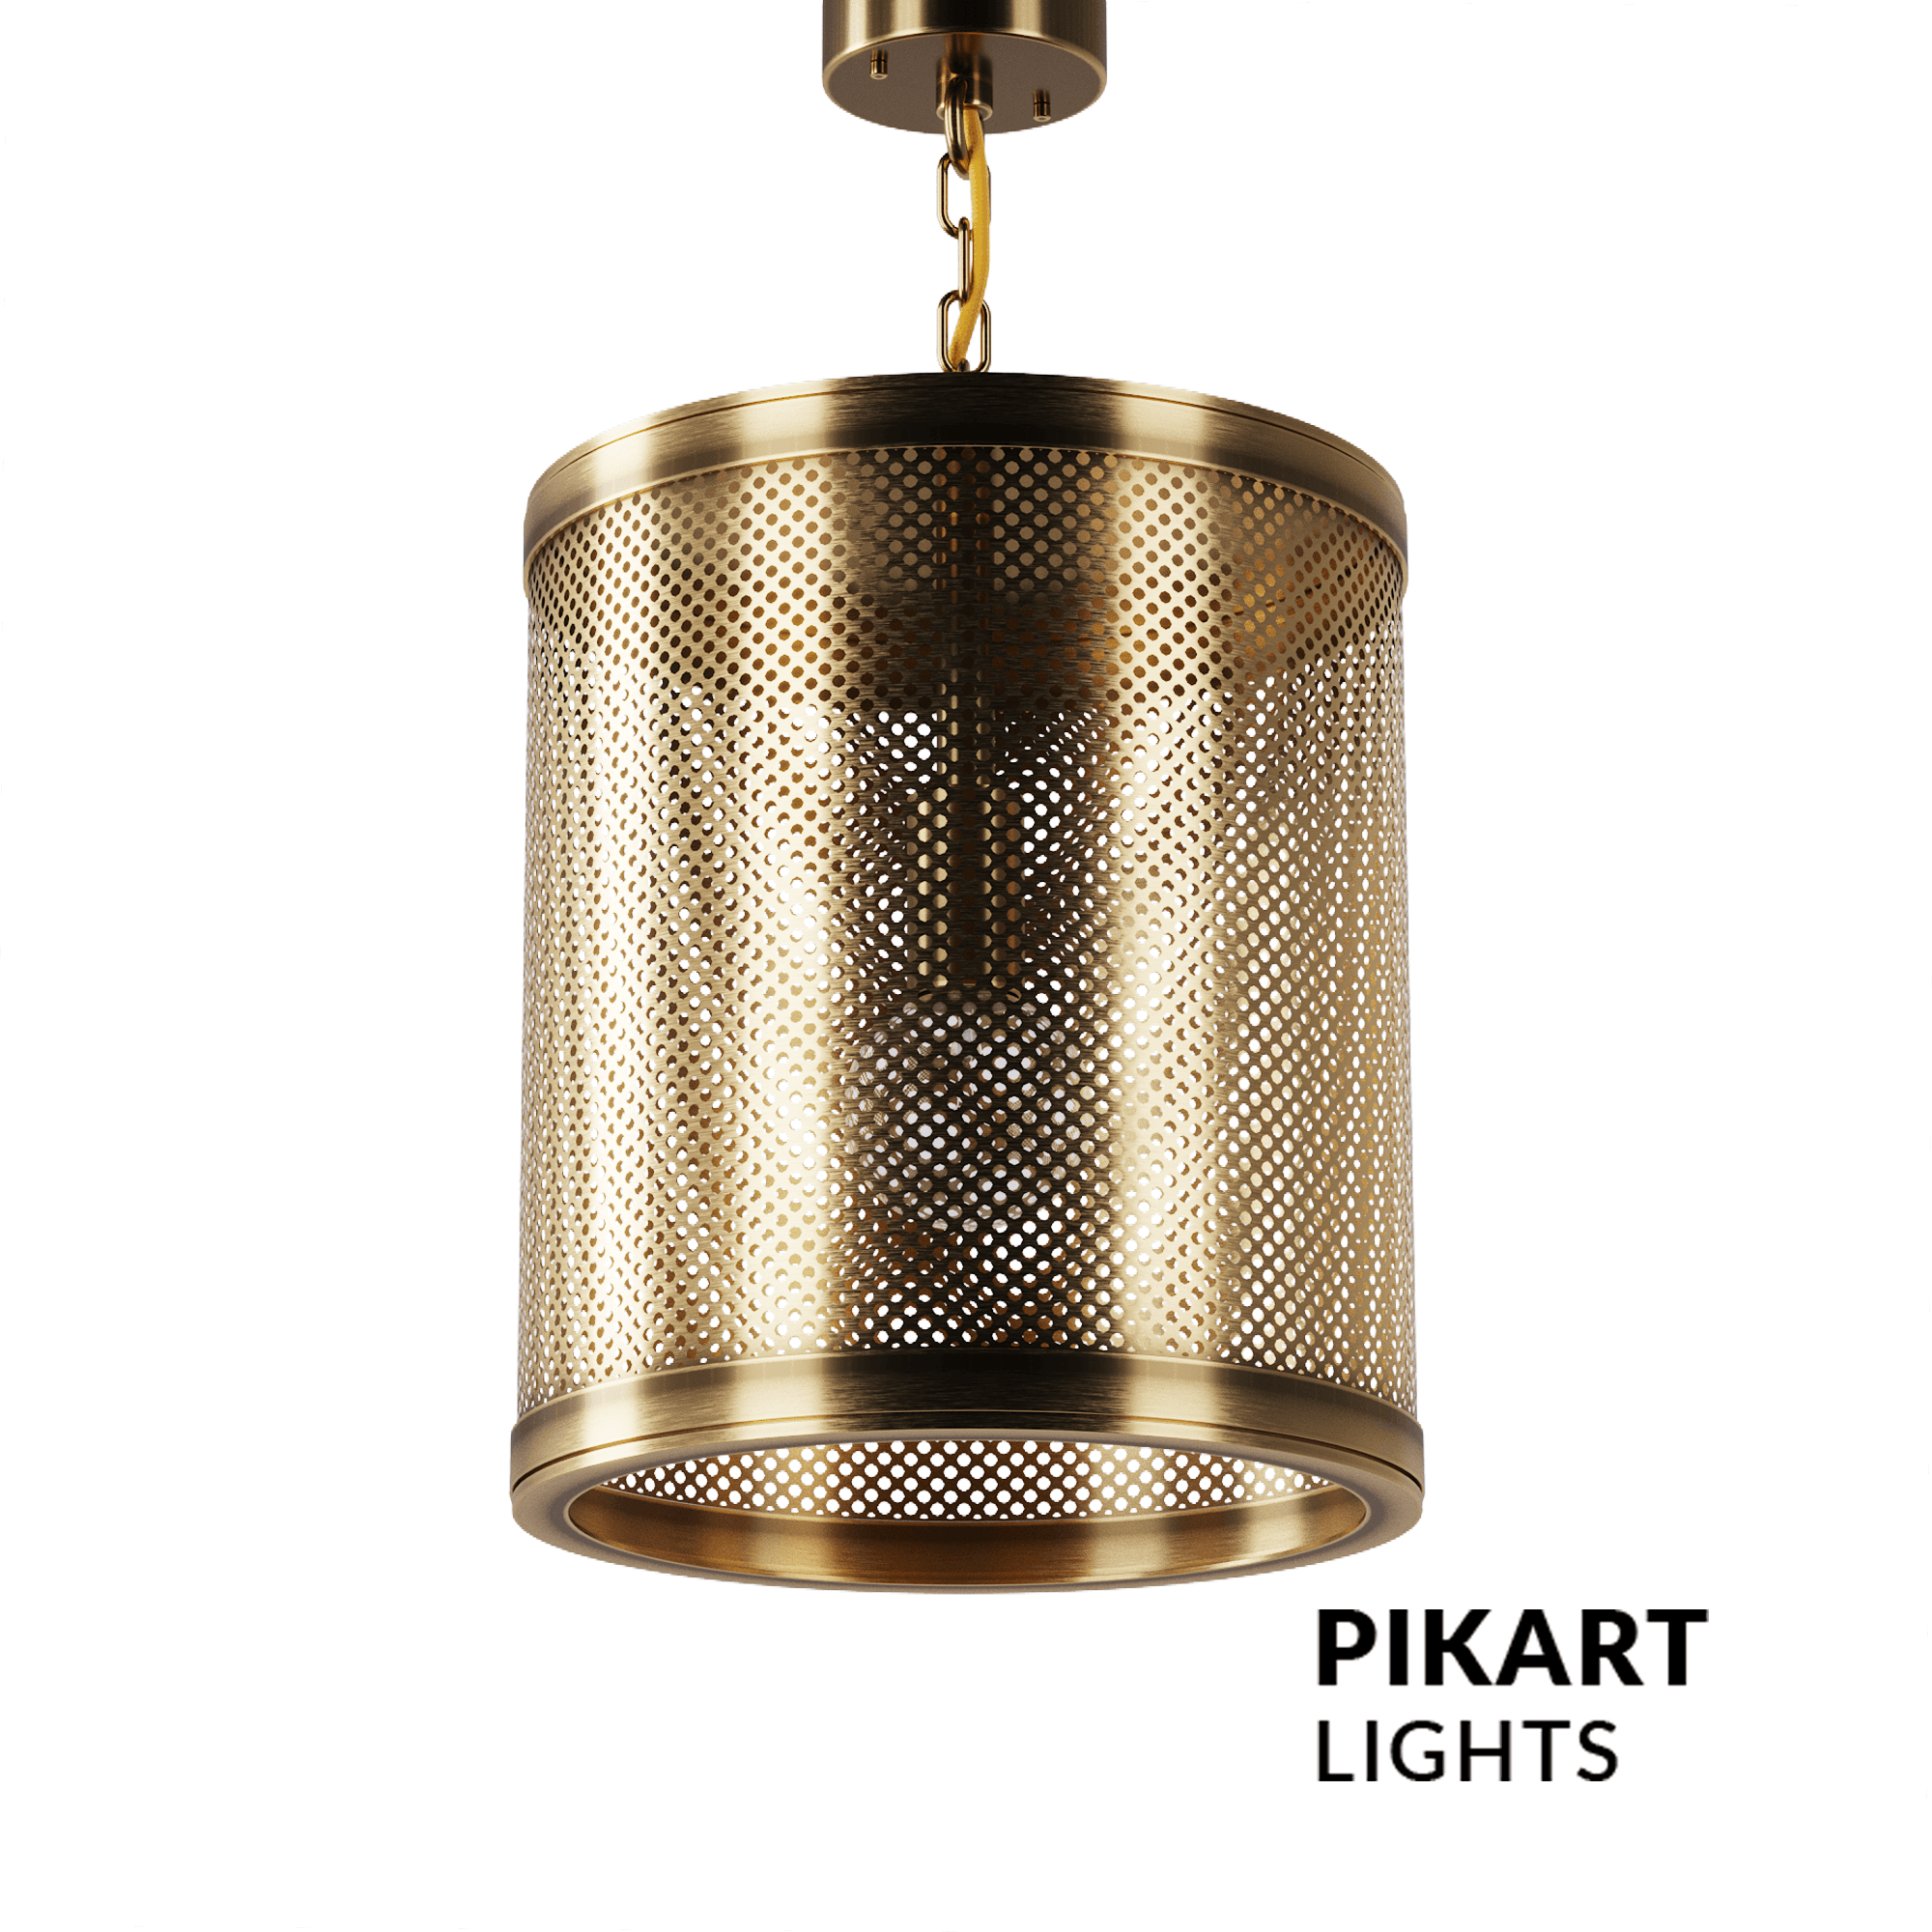 Grid lamp, SKU.5279 by Pikartlights 3d model